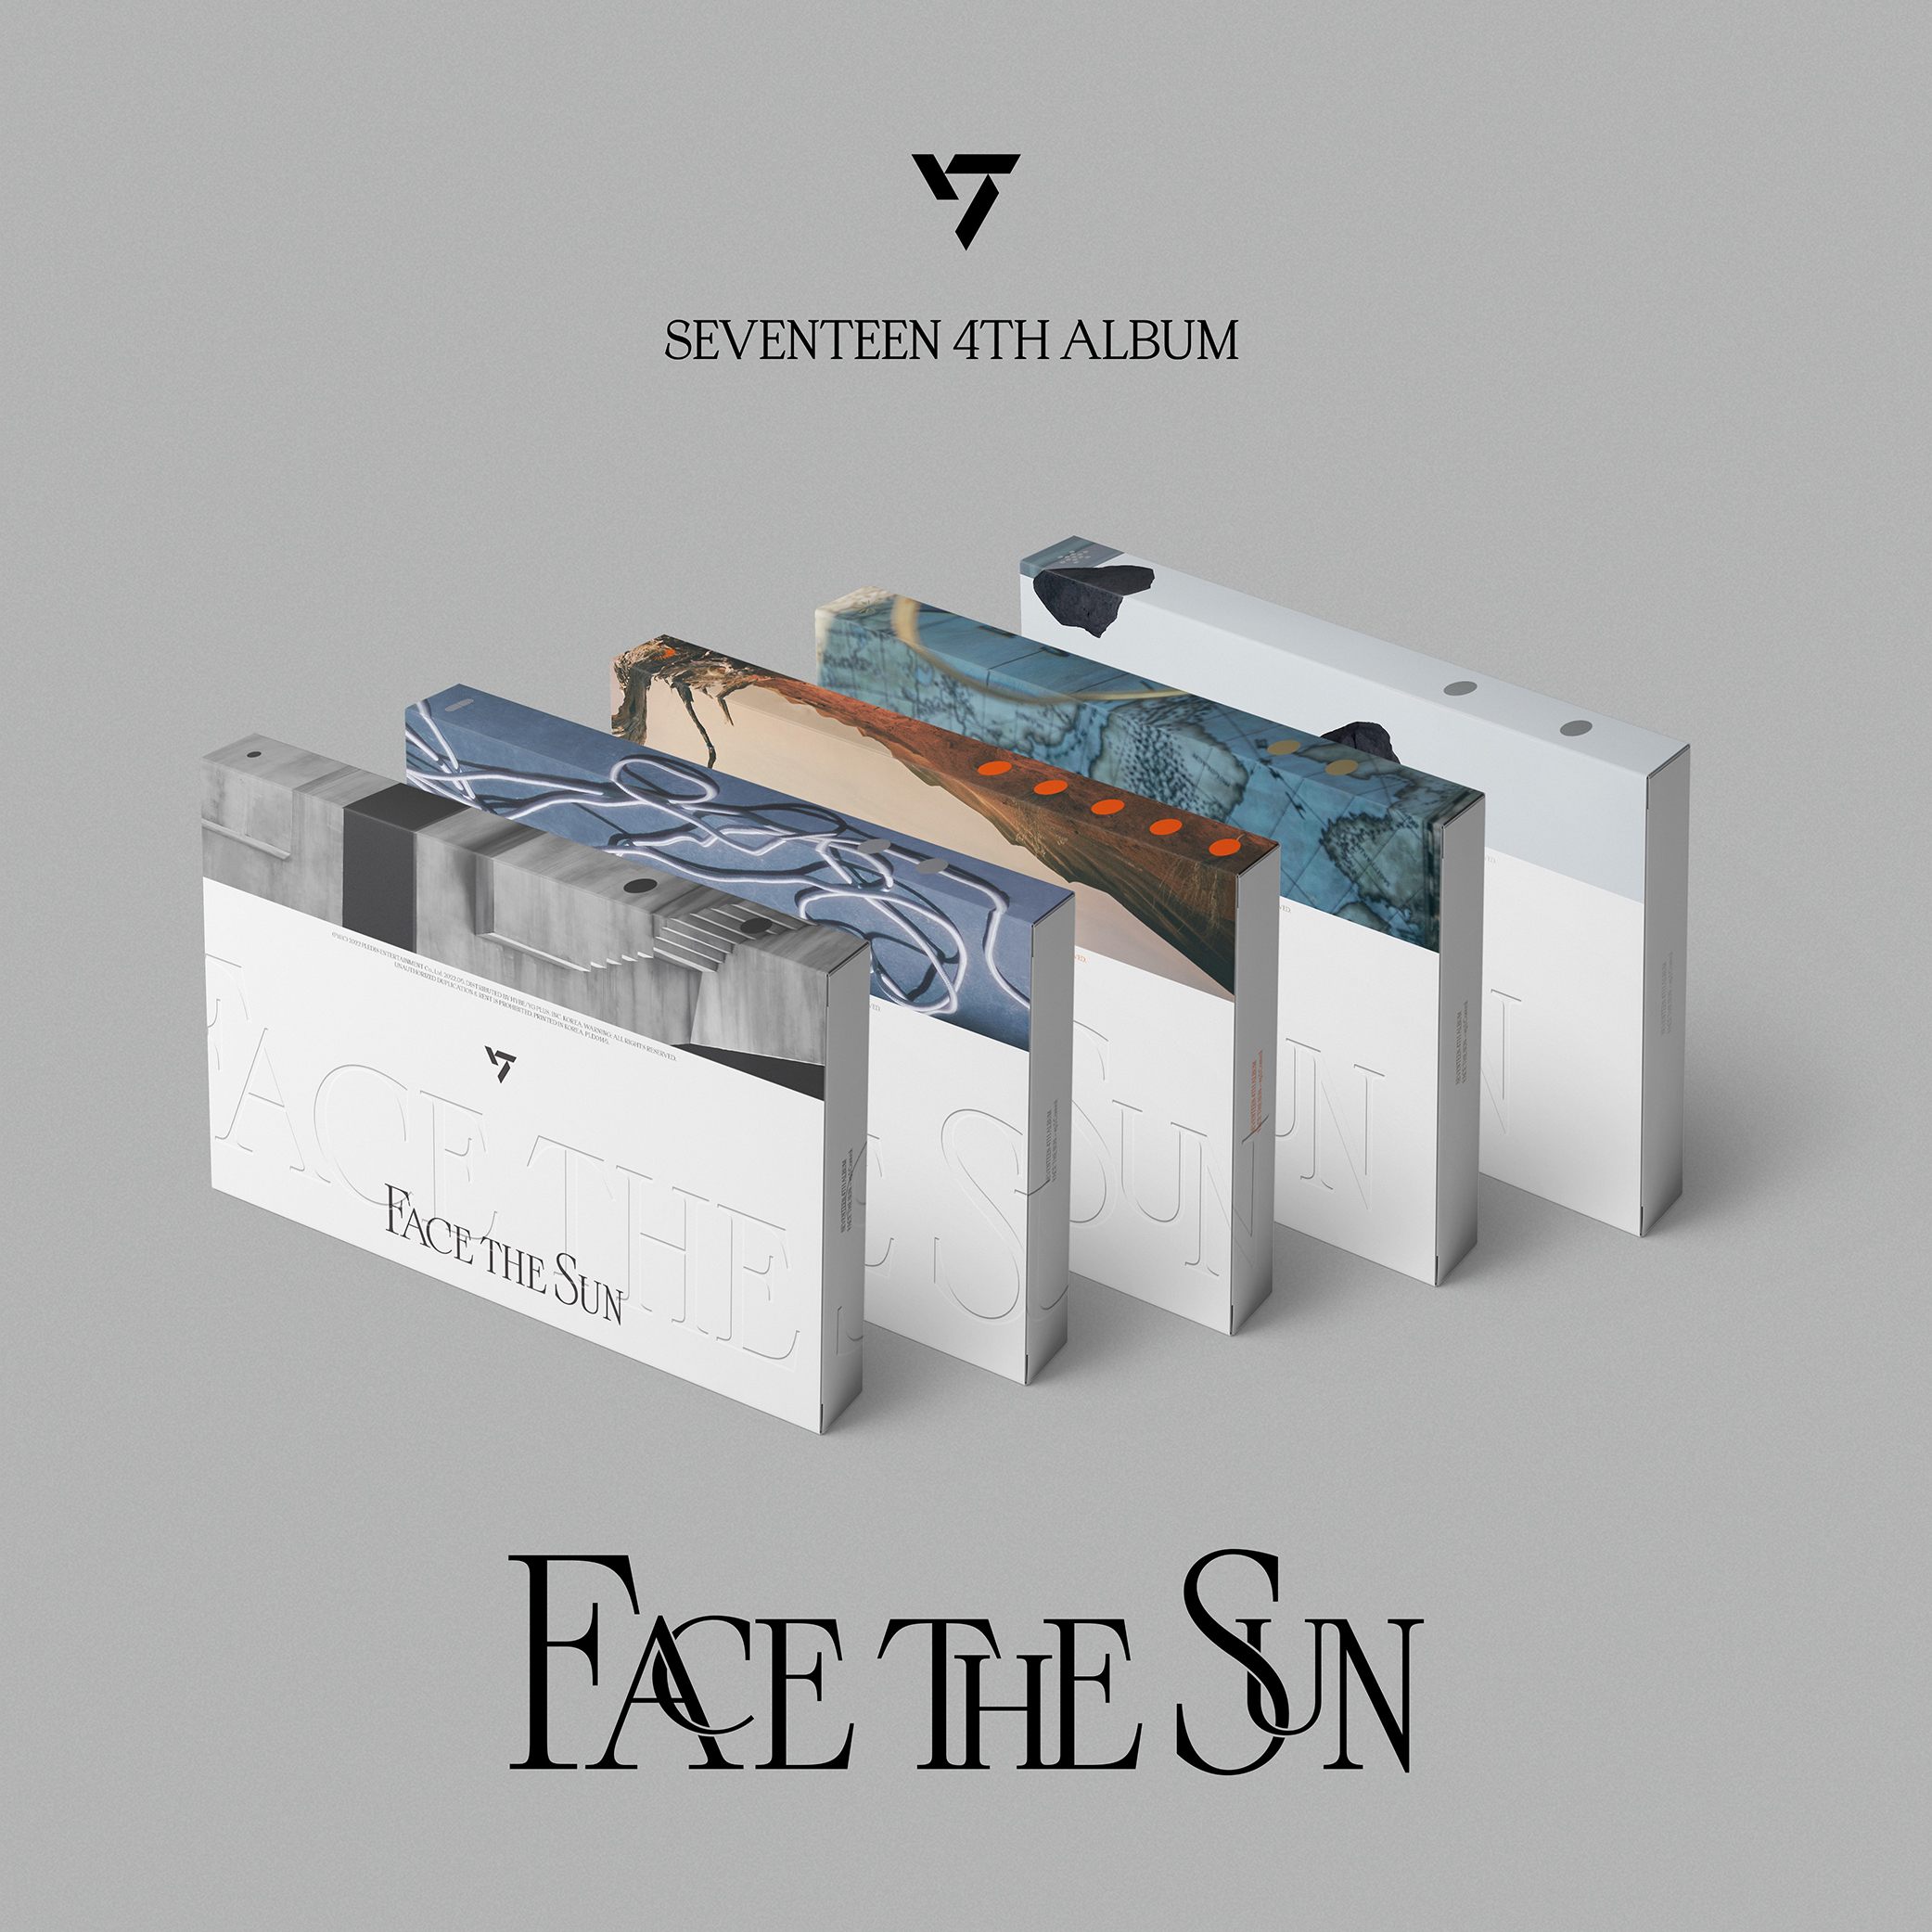 [@carats_trading] Seventeen - 4TH ALBUM [Face the Sun] (ep.1 Control Ver.)